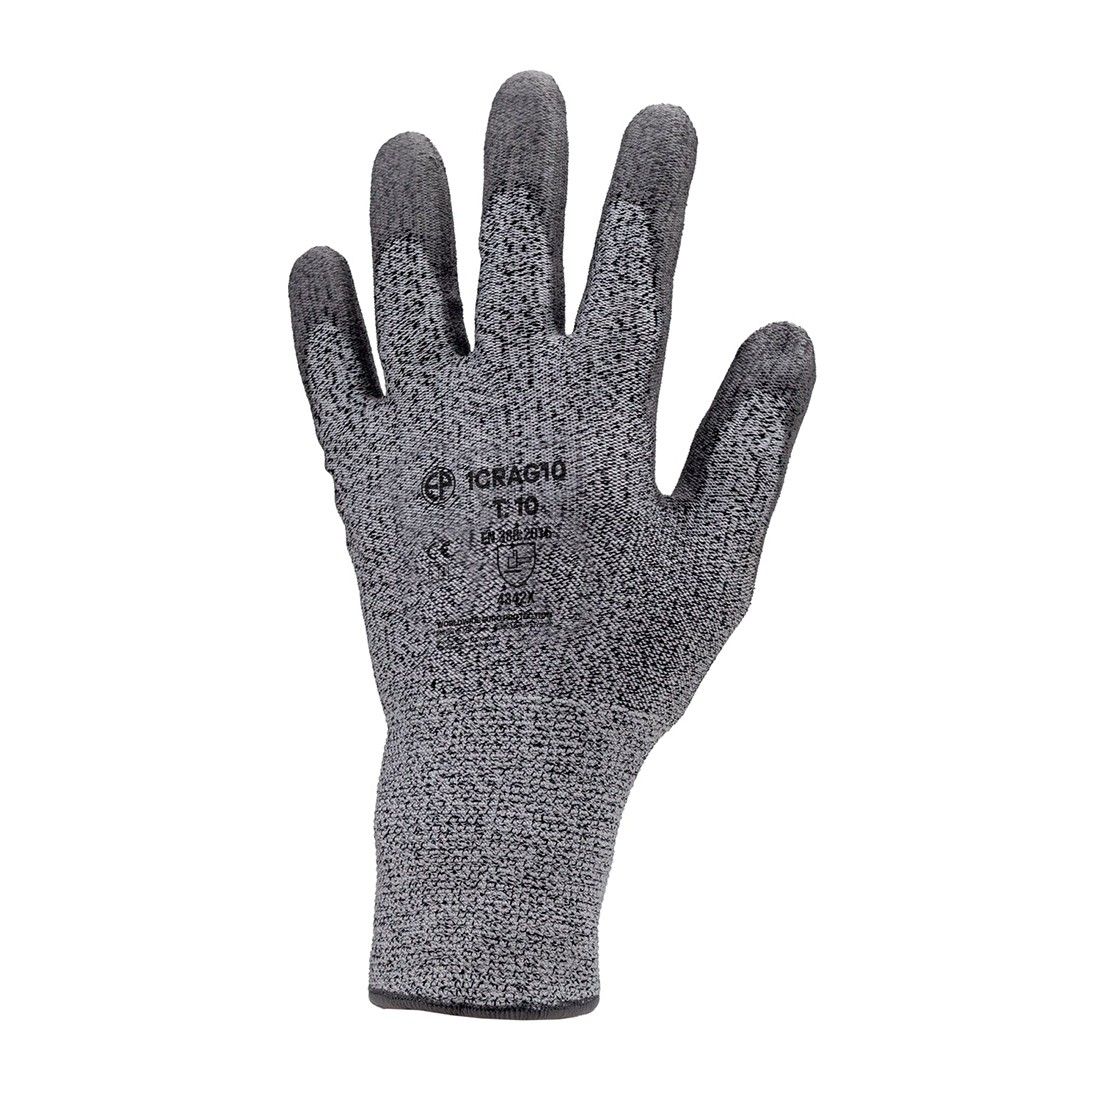 Coverguard - Gants anti froid gris en coton enduit latex EUROWINTER 3875  (Pack de 12)